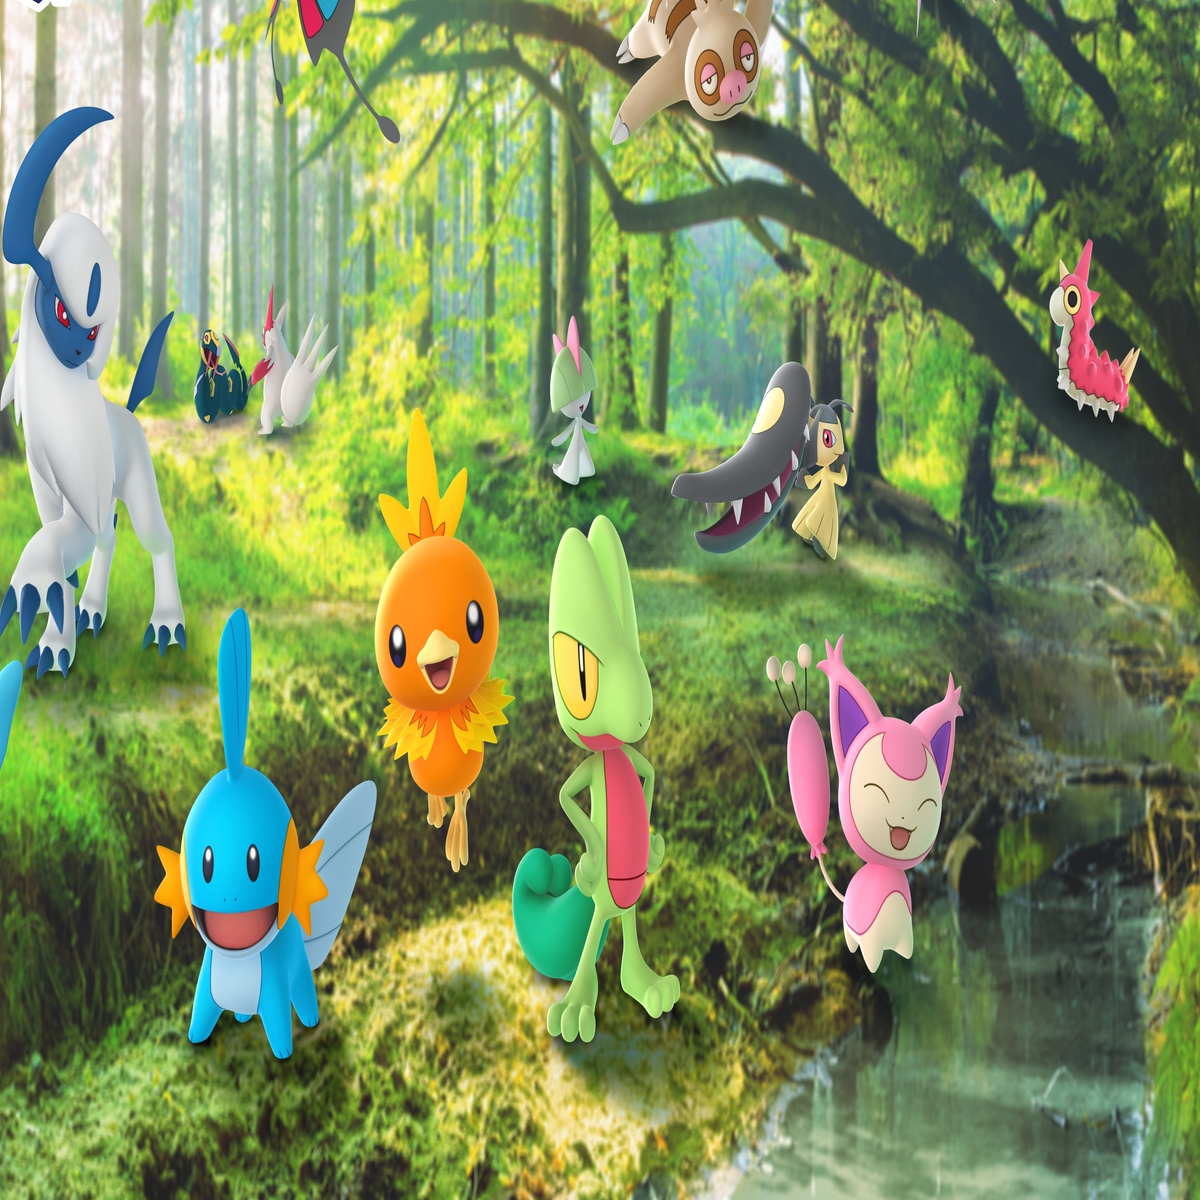 Pokemon Sword & Shield / Hoenn Starters / Shiny Treecko Mudkip 